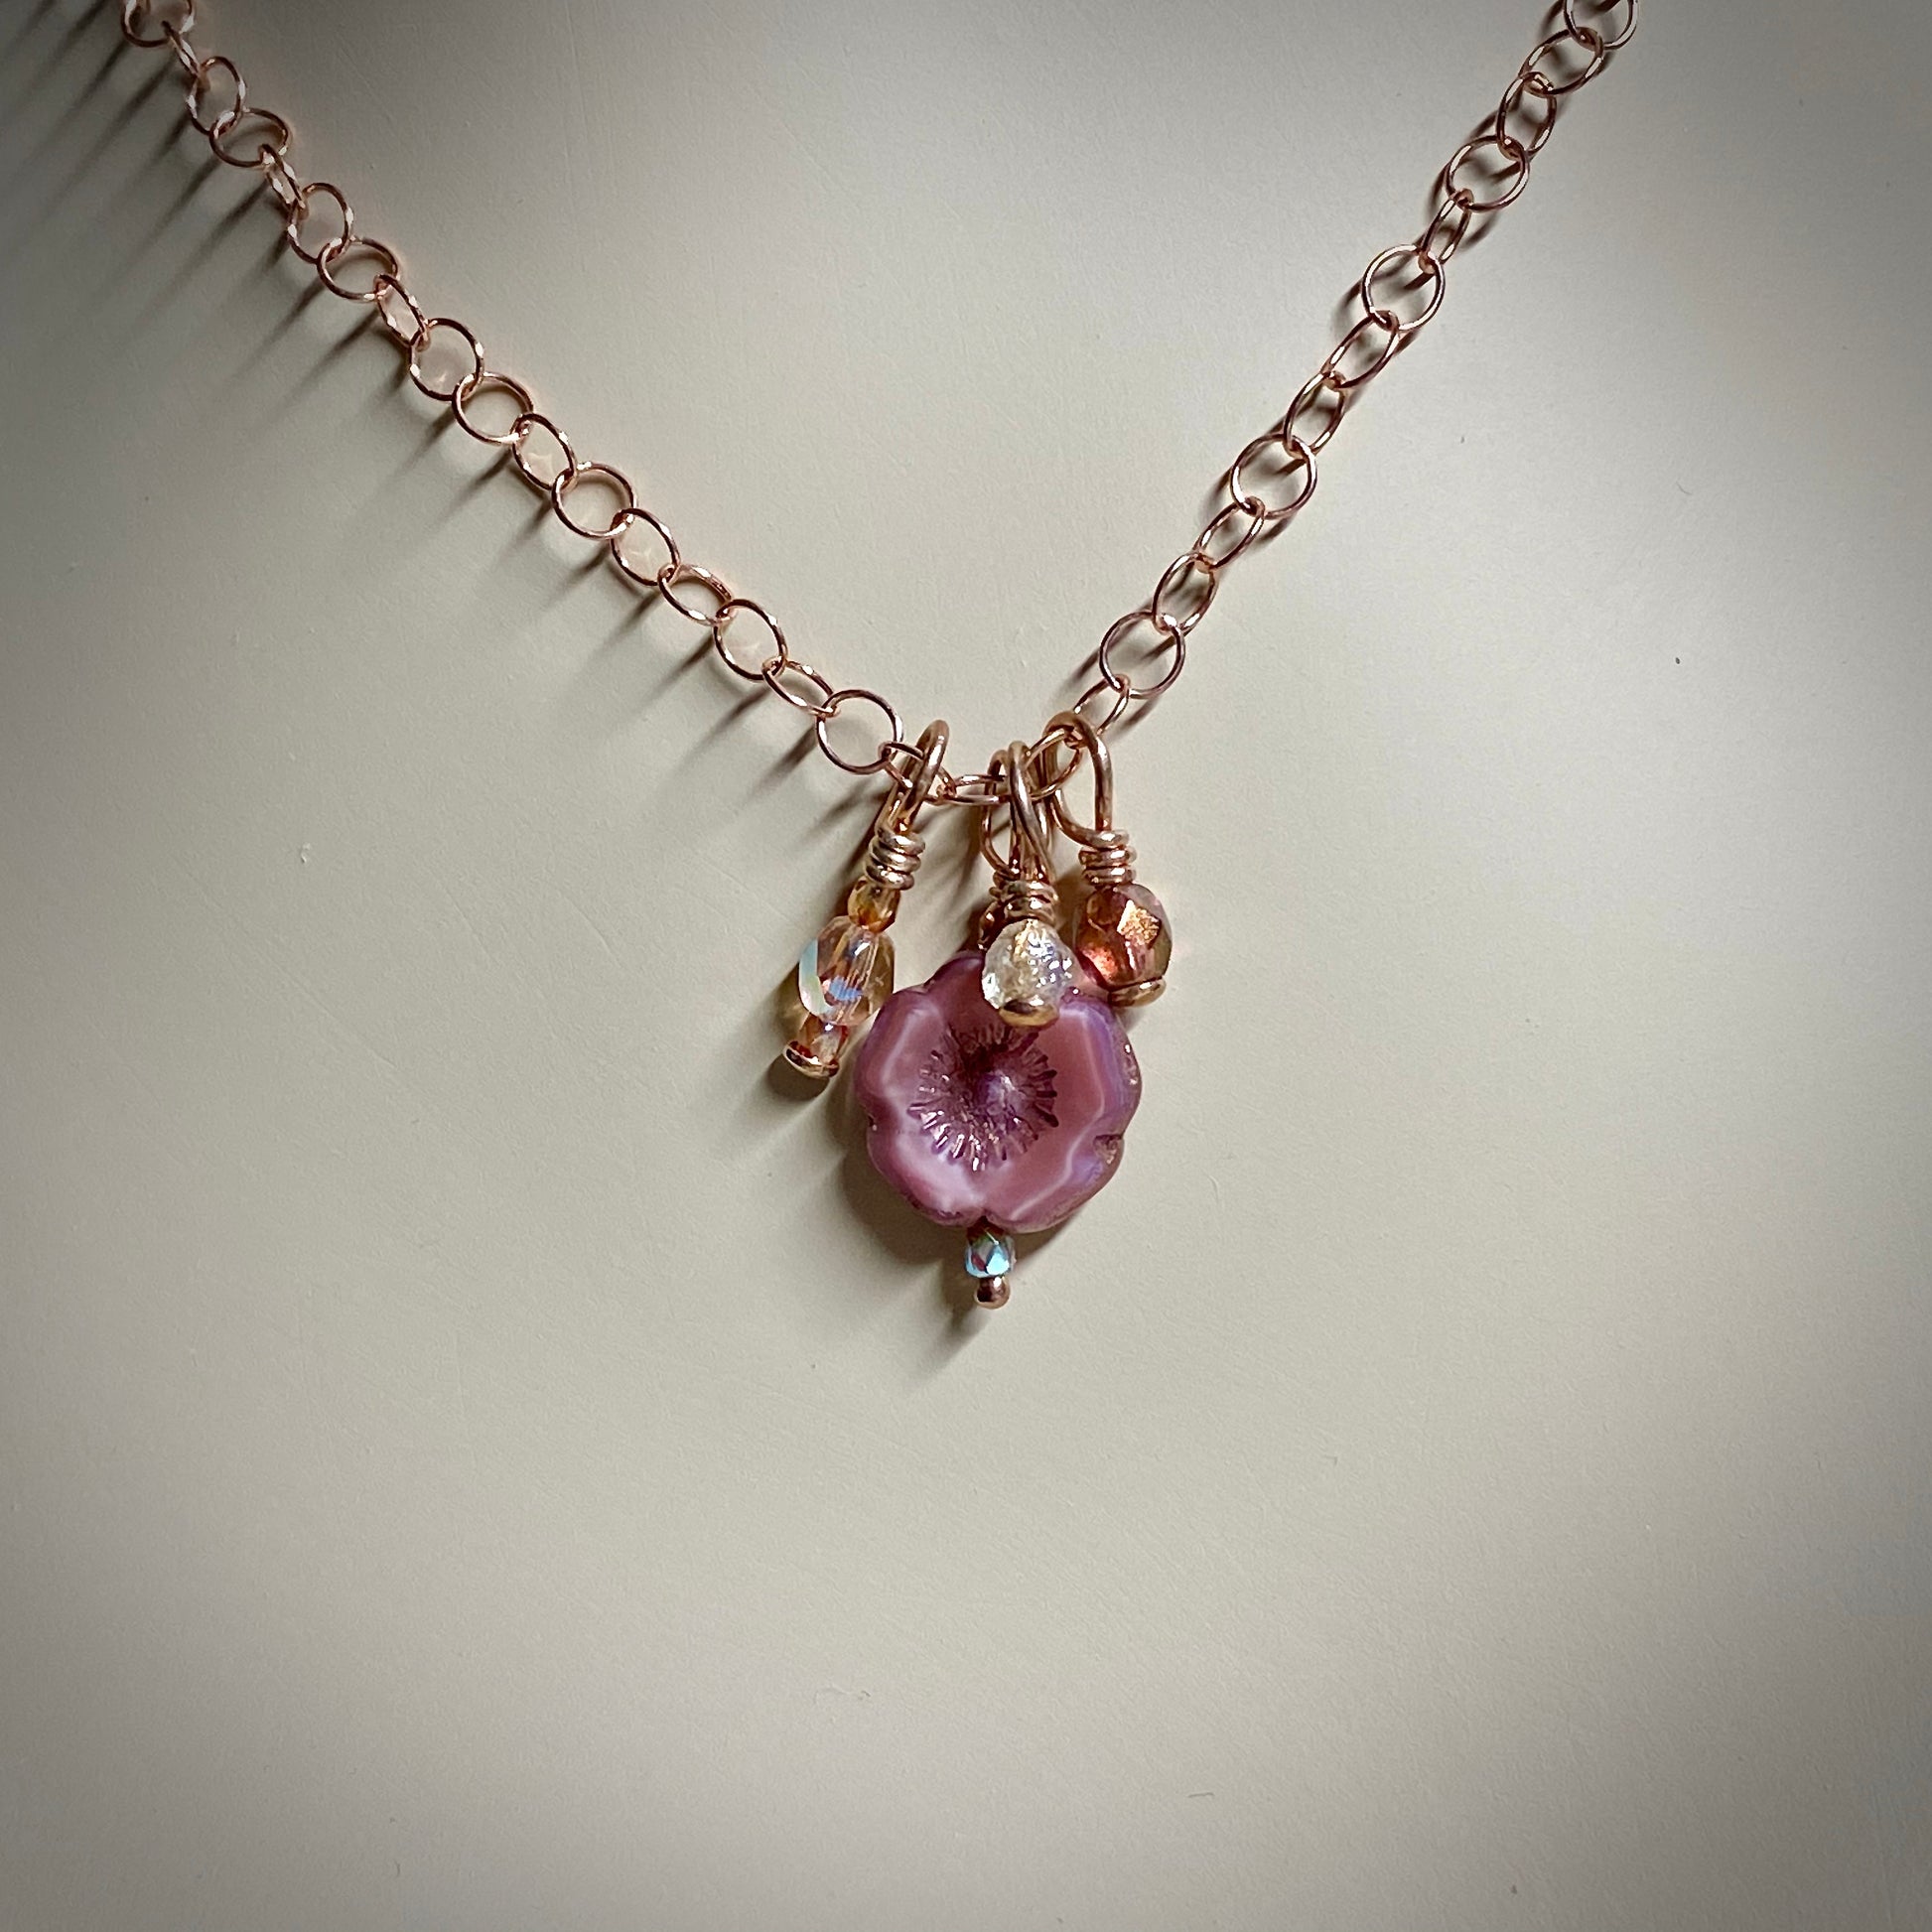 Arpaia "Burnished Rose" Trinket Necklace